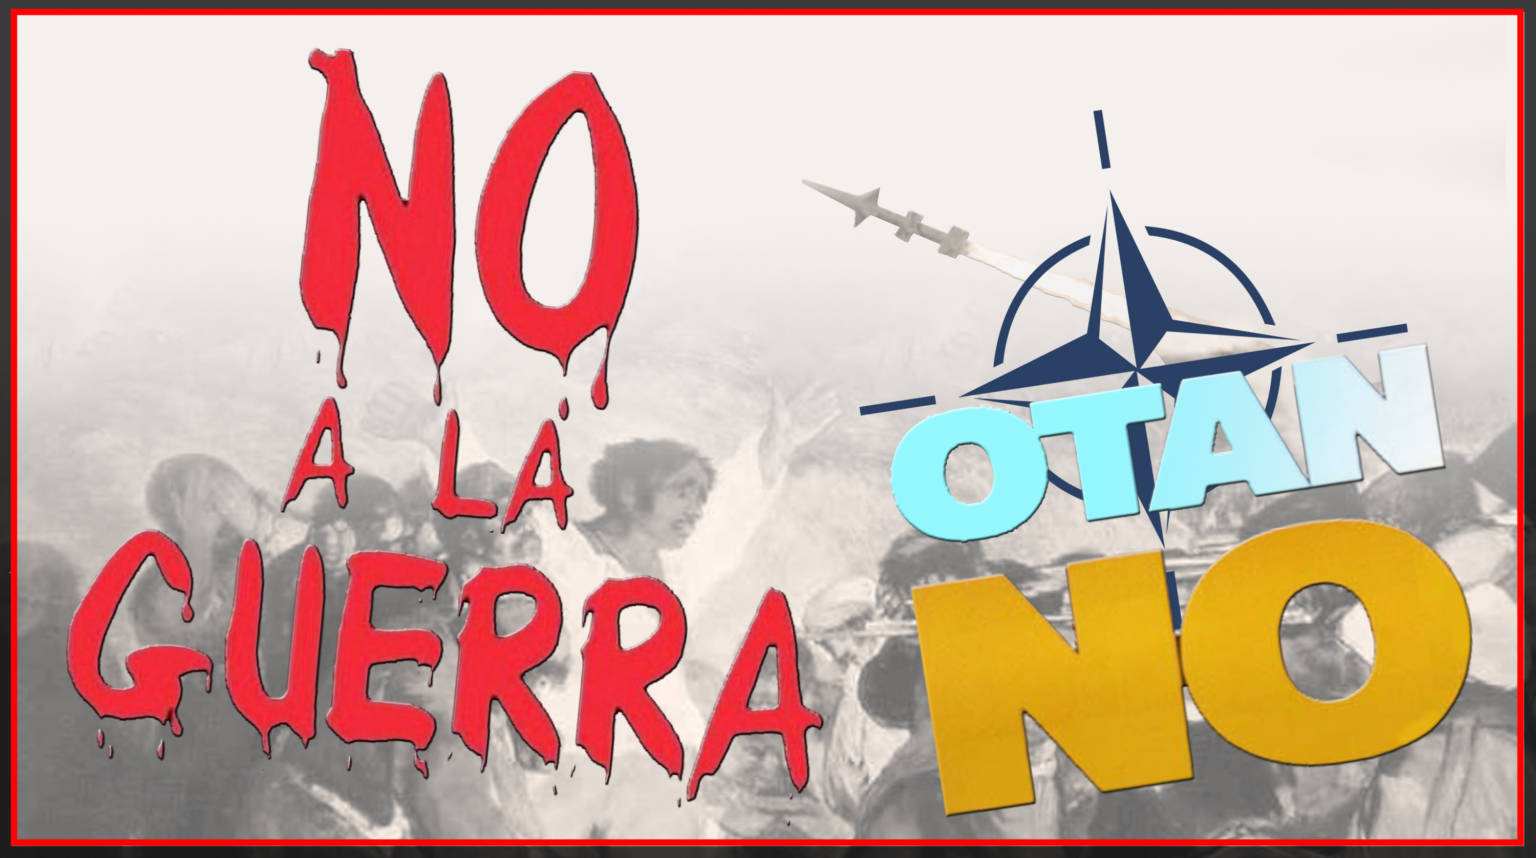 NO A LA GUERRA OTAN NO 

NO A LA GUERRA OTAN NO

NO A LA GUERRA OTAN NO Ilustración Fernando Francisco Serrano